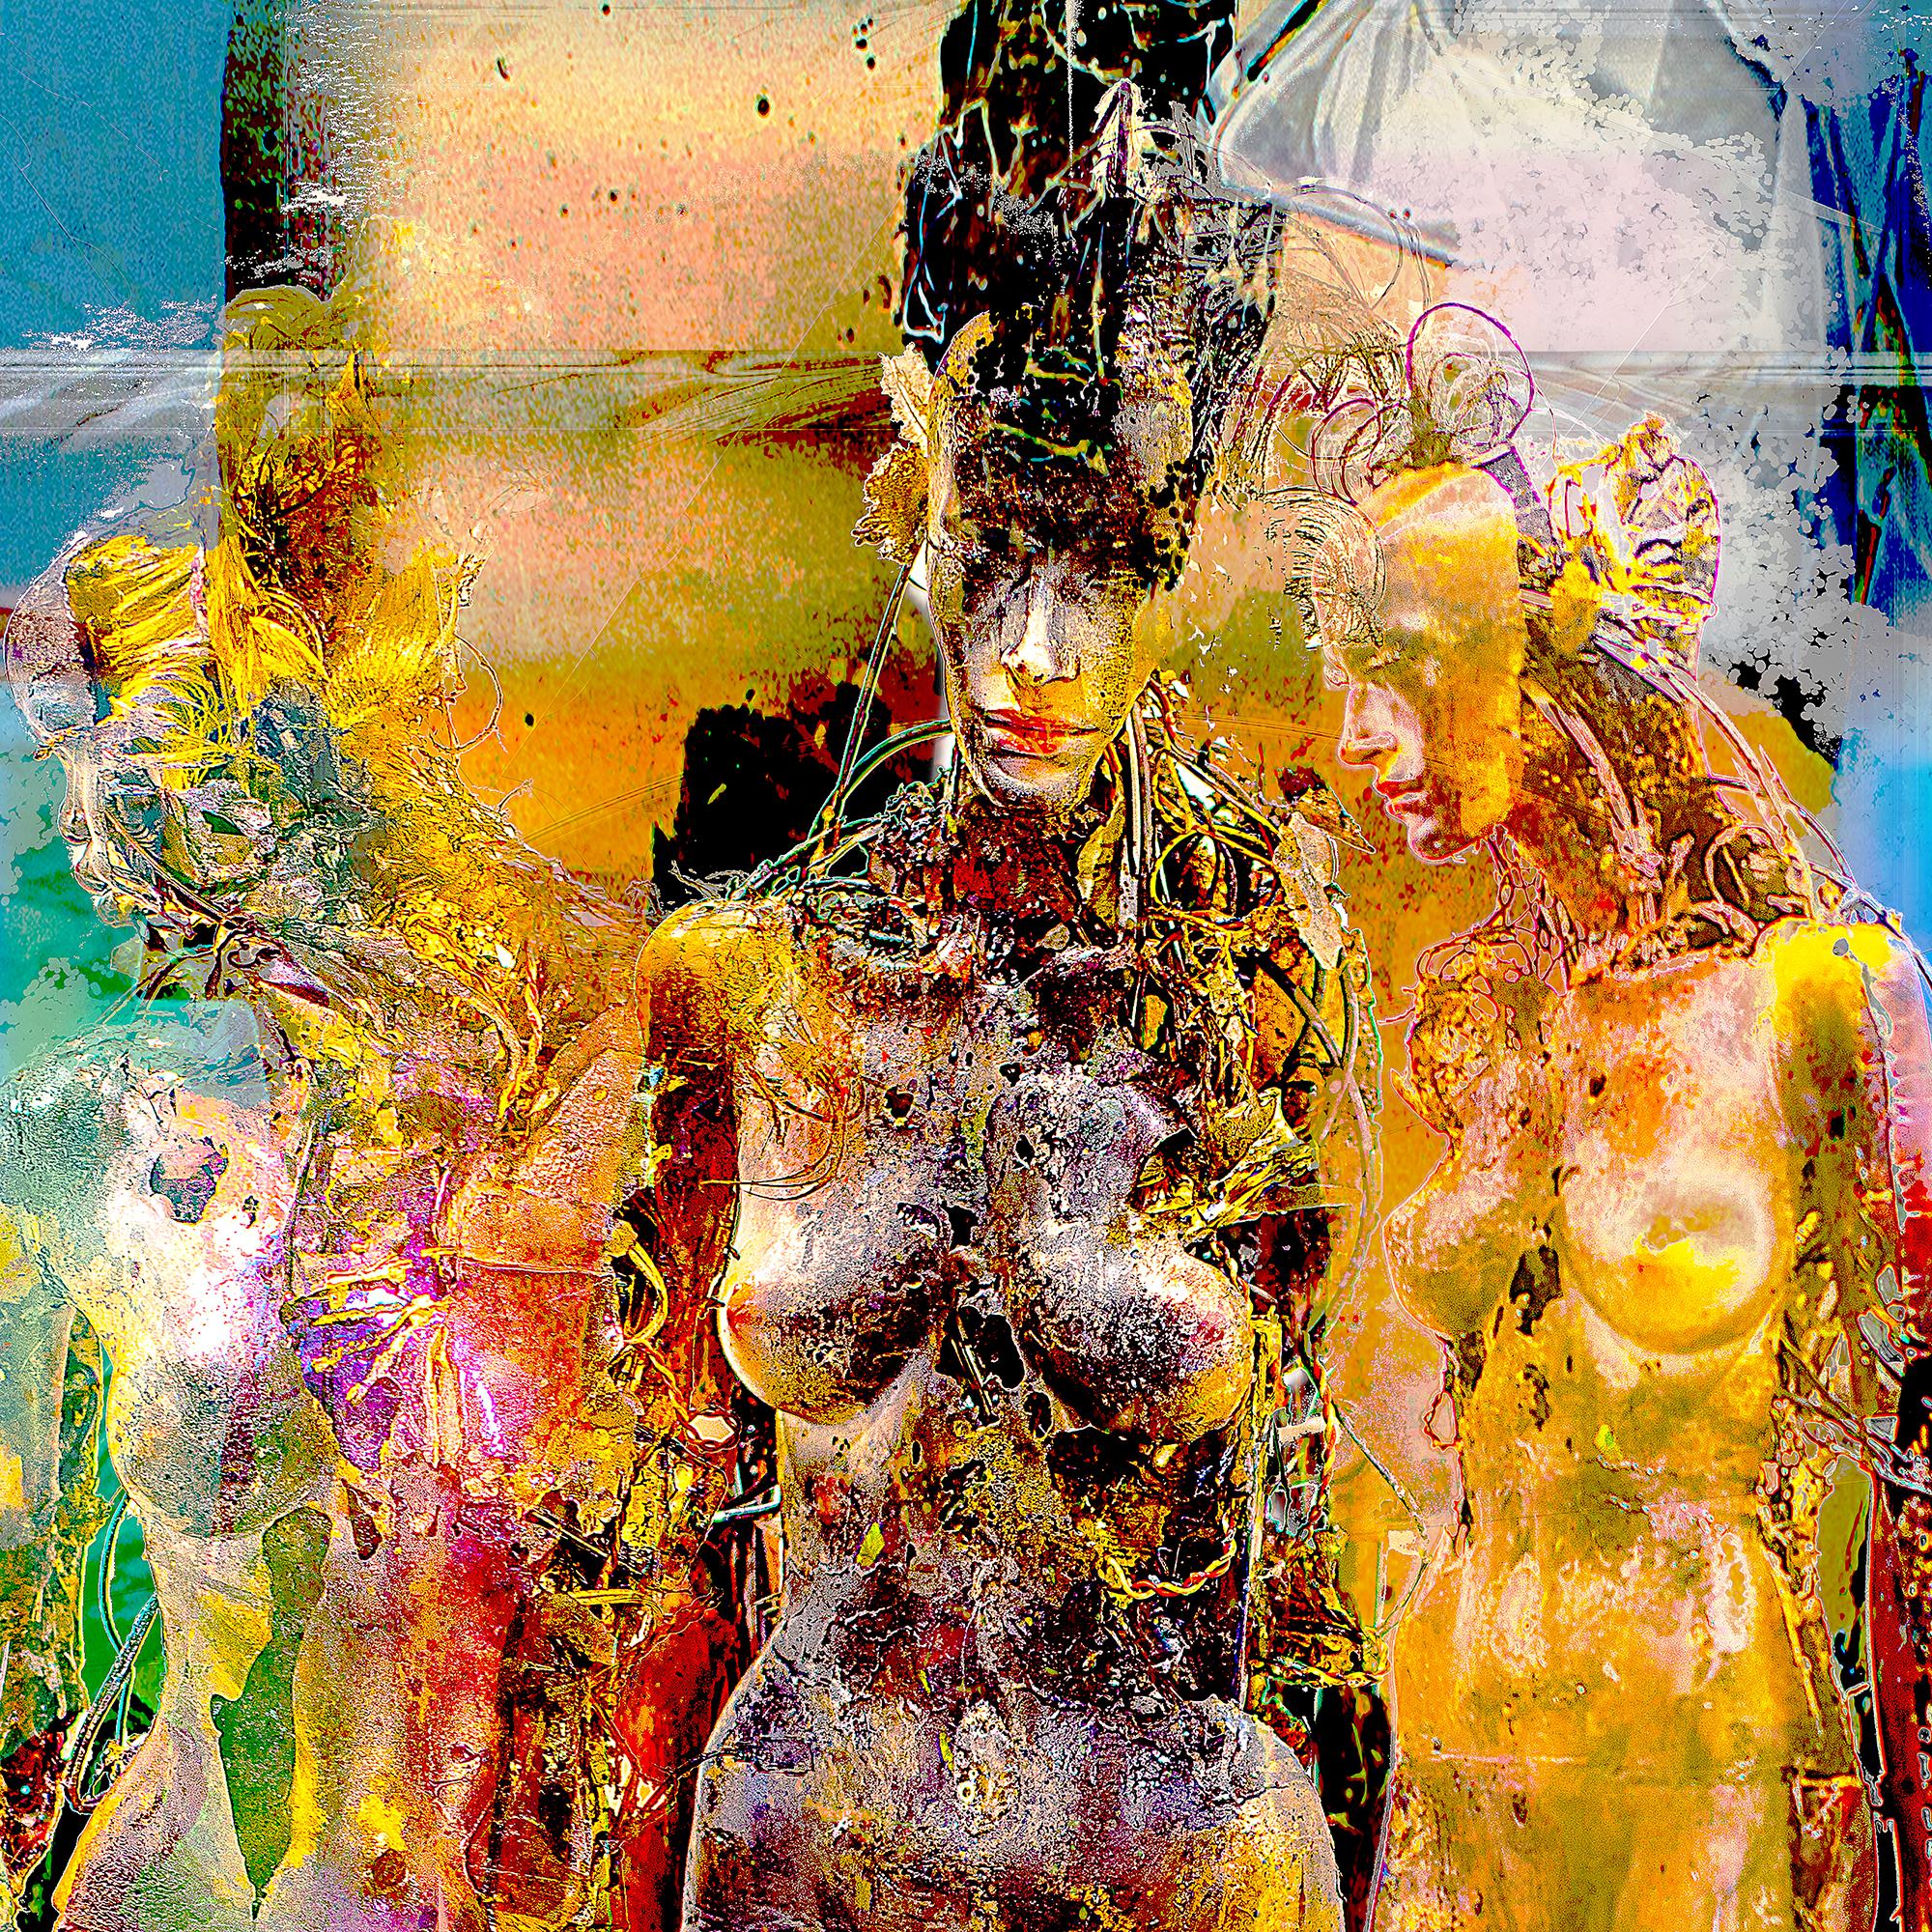 Peinture numérique « Figures encadrées », impression Lamda - Photograph de Jens-Christian Wittig